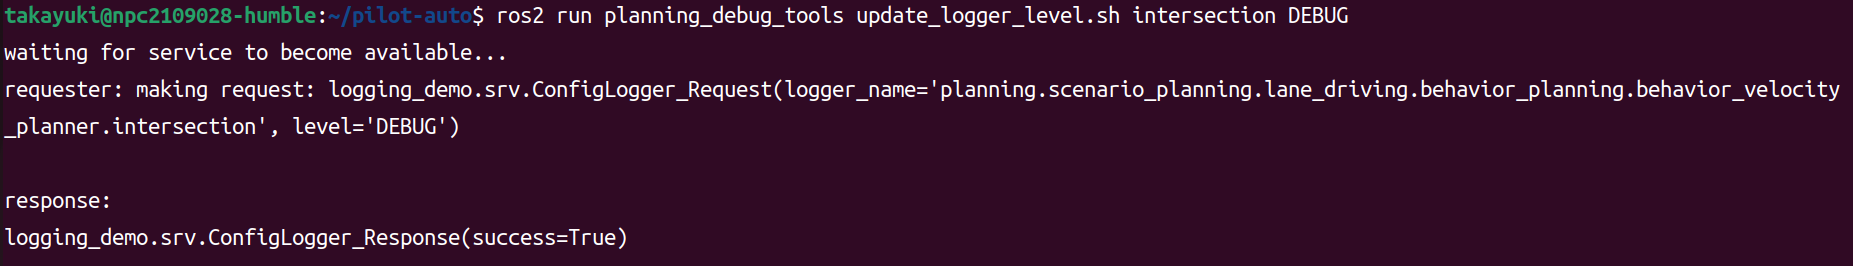 logging_level_updater